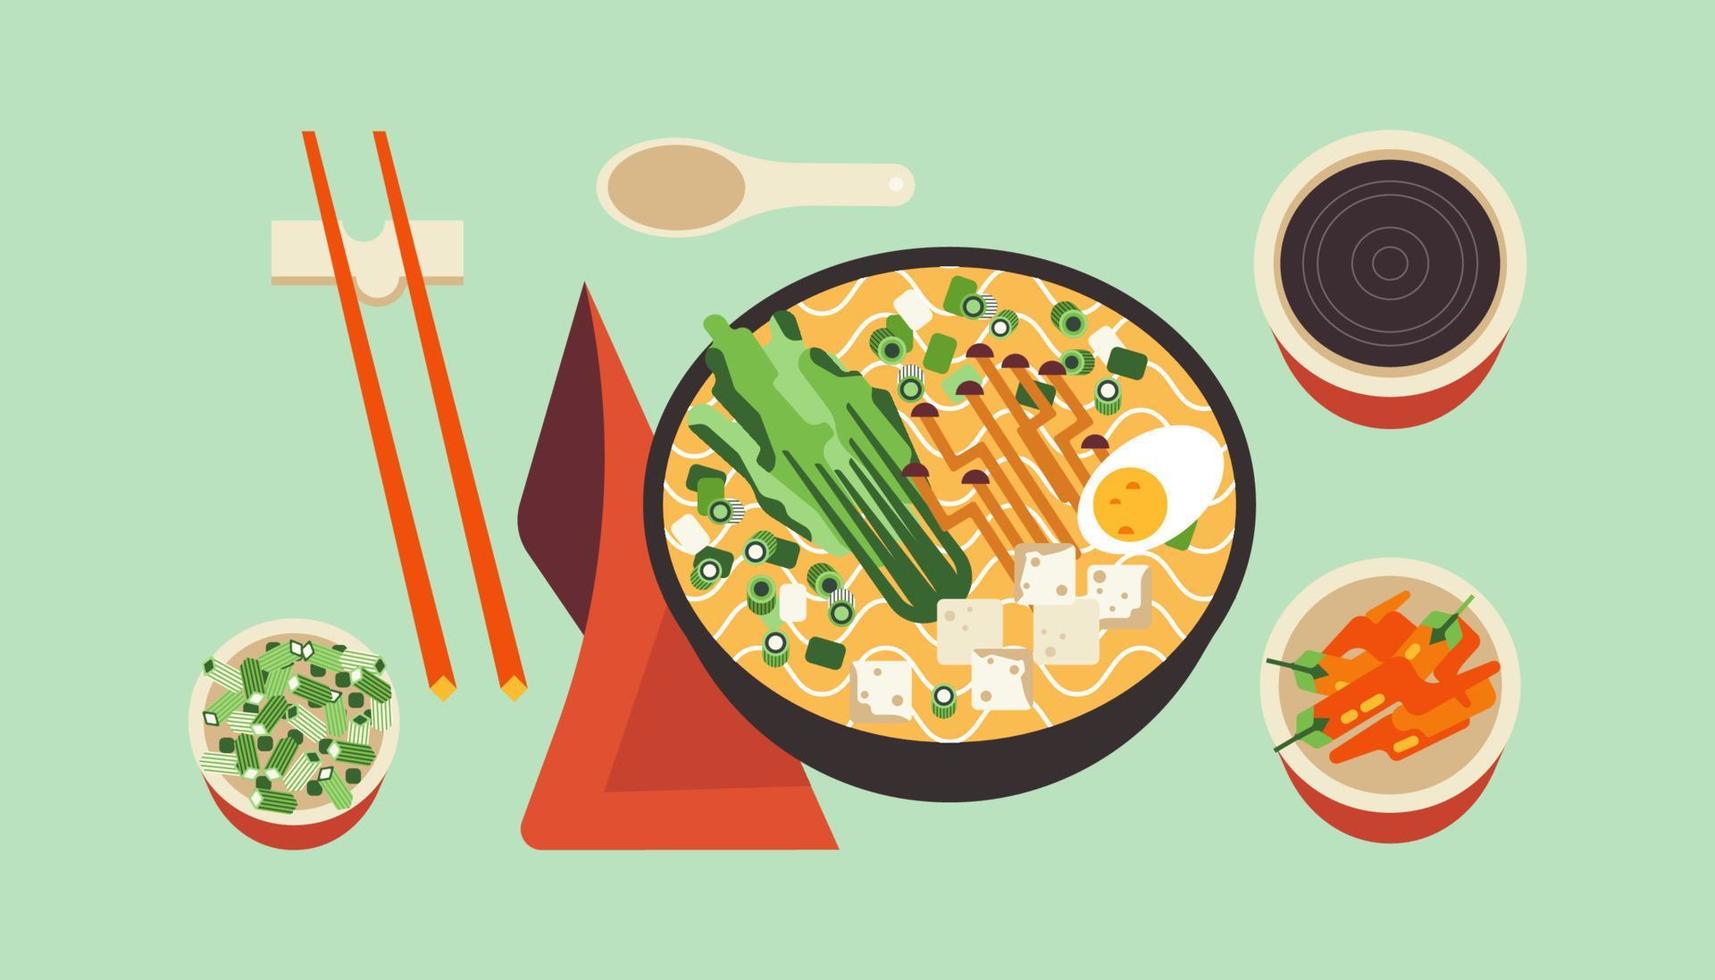 zuppa di noodle ramen asiatico con uovo. ciotola con cibo tailandese caldo piccante. piatti giapponesi con bacchette e spezie isolate. illustrazione vettoriale della cultura della delicatezza della cucina orientale.